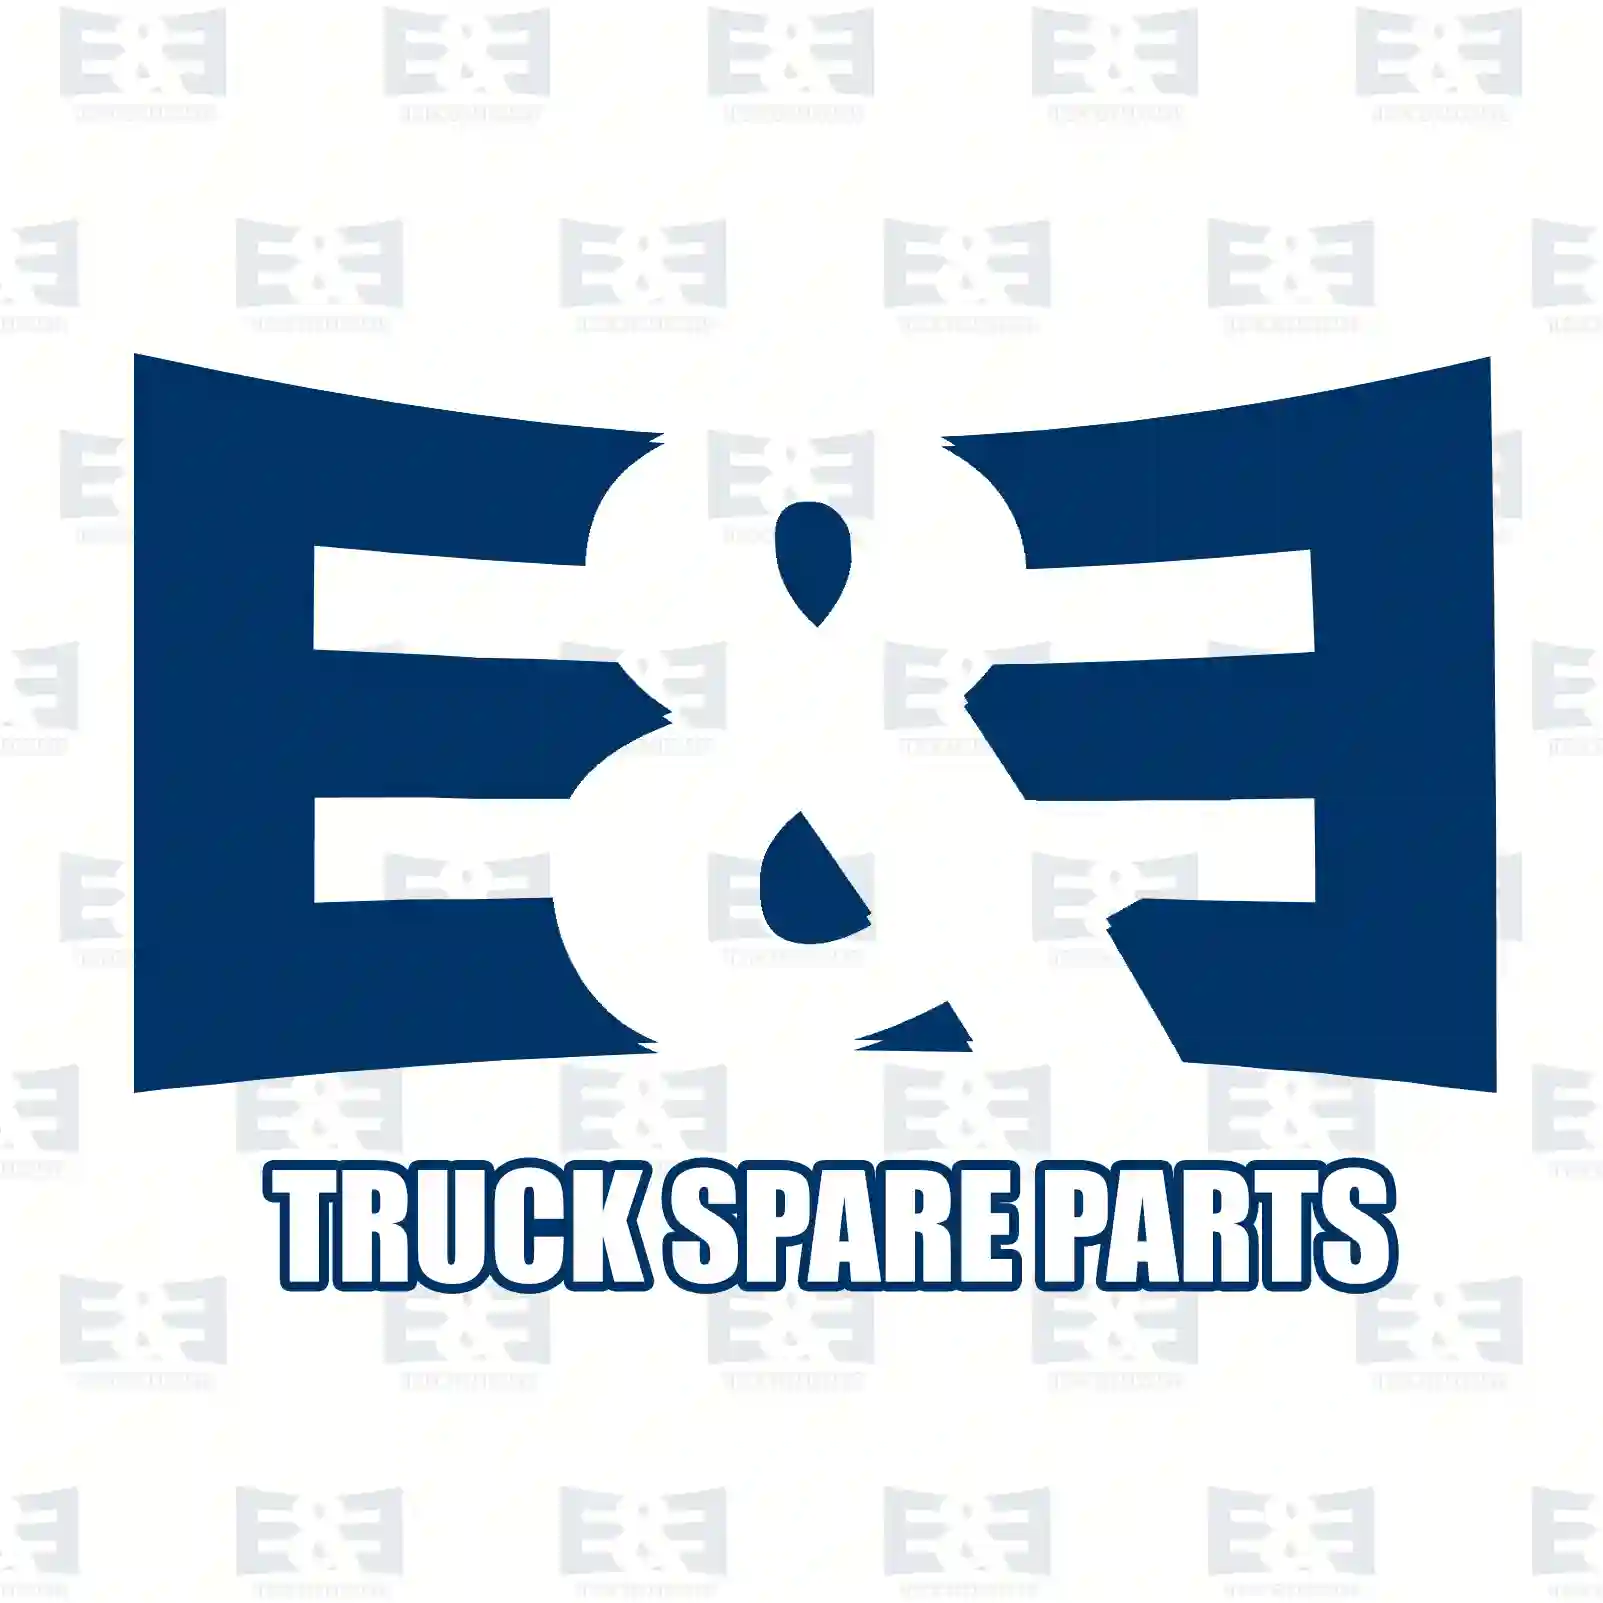 Oil seal, 2E2278009, 0189979147, ZG02732-0008, ||  2E2278009 E&E Truck Spare Parts | Truck Spare Parts, Auotomotive Spare Parts Oil seal, 2E2278009, 0189979147, ZG02732-0008, ||  2E2278009 E&E Truck Spare Parts | Truck Spare Parts, Auotomotive Spare Parts